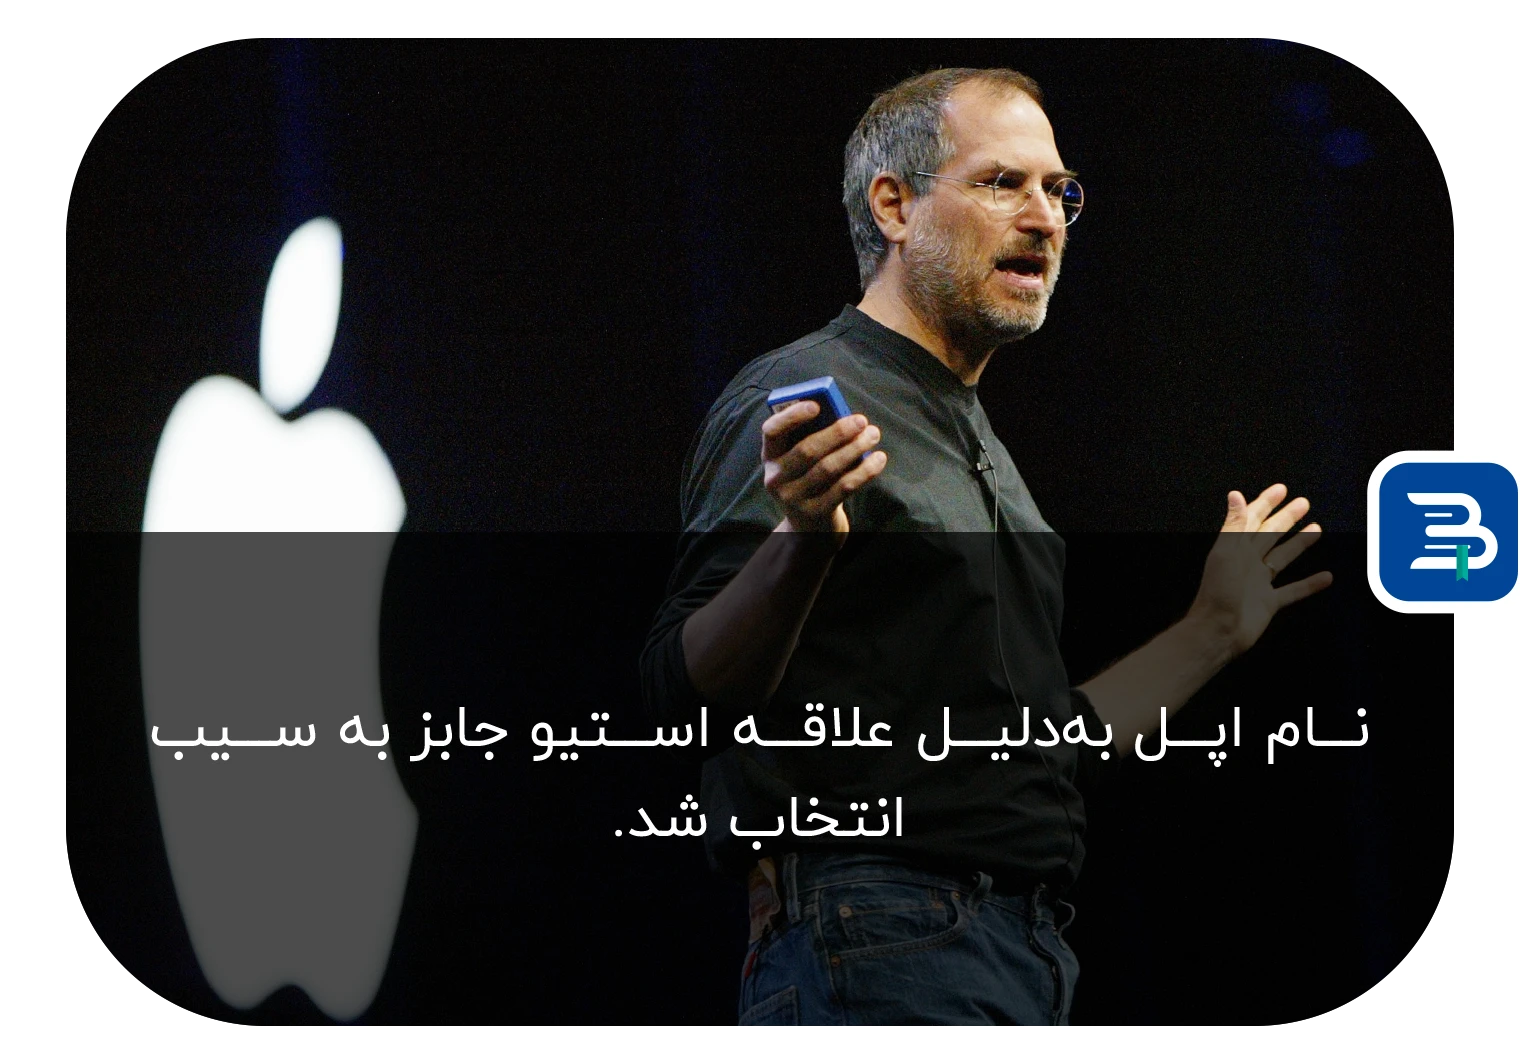 استیو جابز در کنار لوگوی شرکت اپل